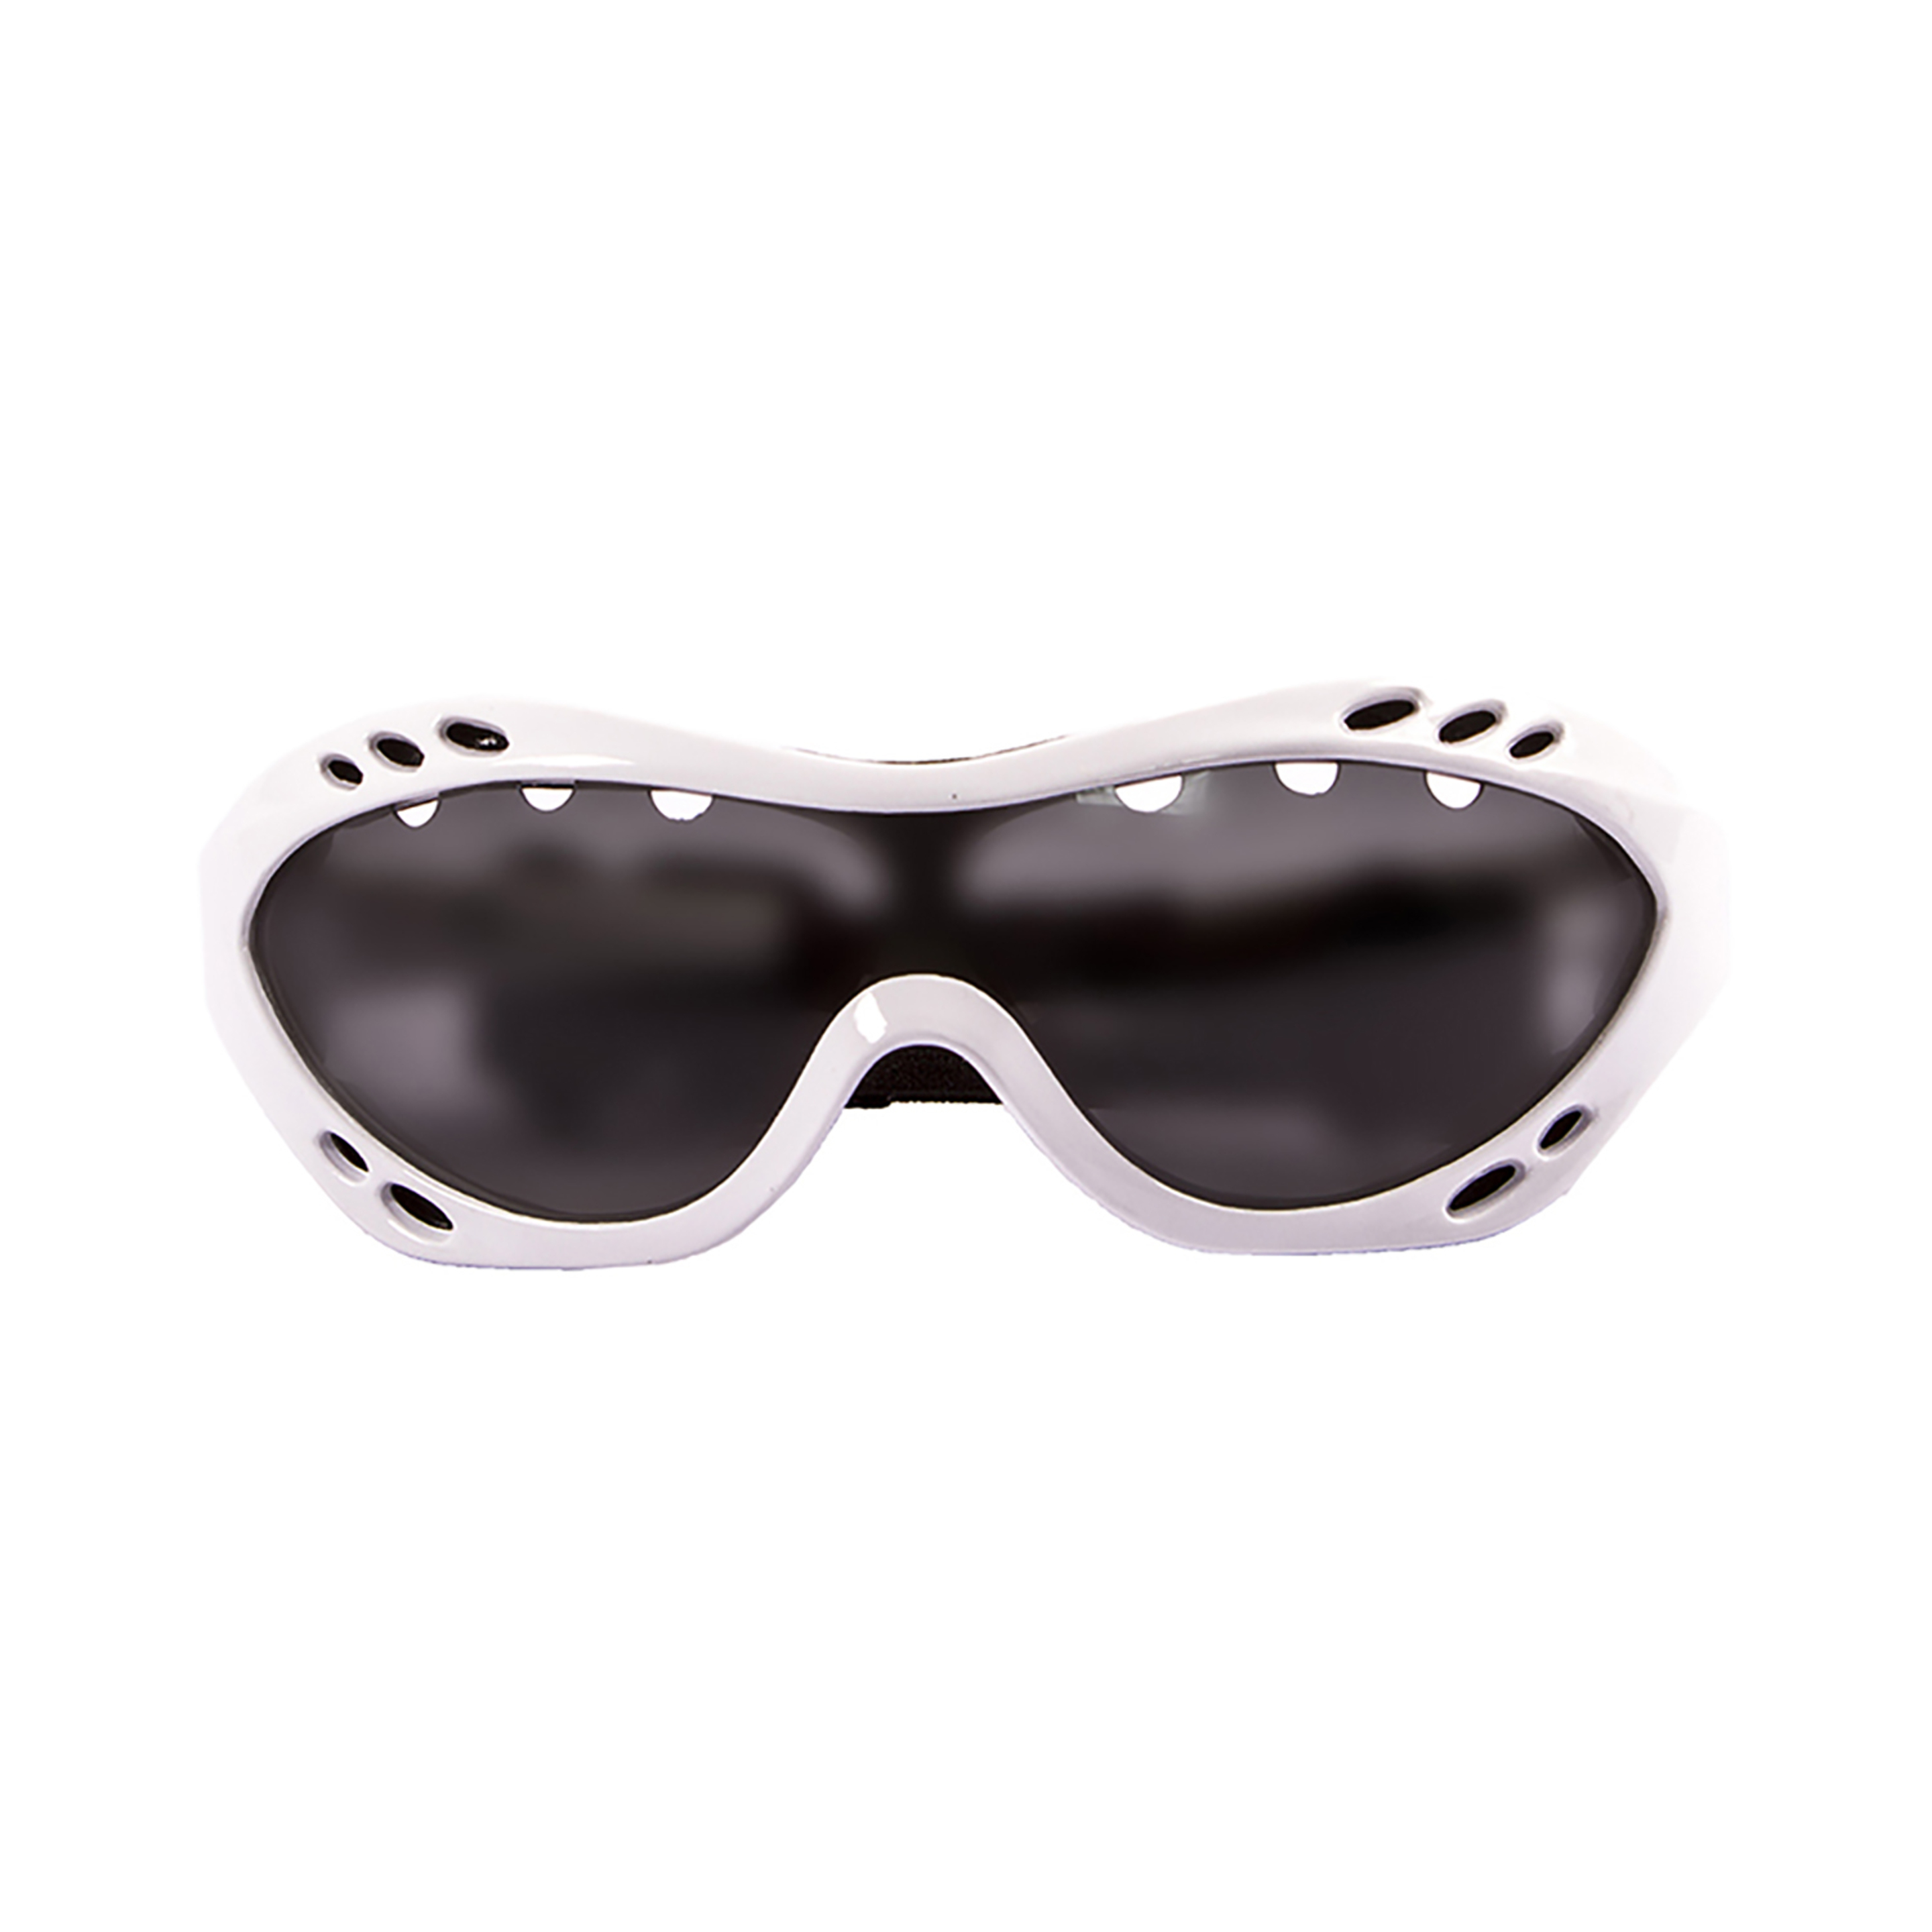 Gafas De Sol Técnicas Para La Práctica De Deportes De Agua  Costa Rica Ocean Sunglasses - Blanco/Negro  MKP